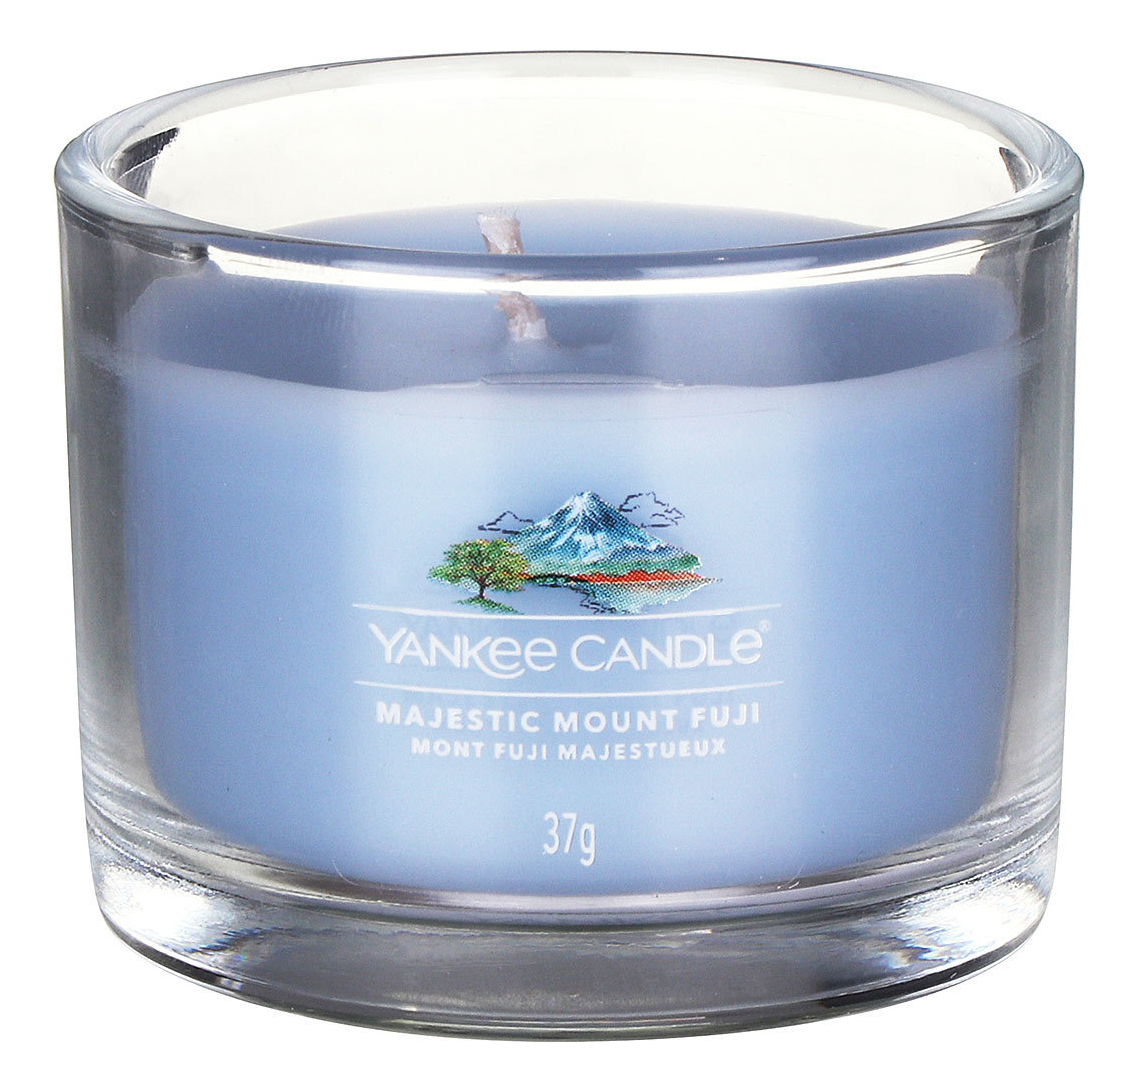 Купить Ароматическая свеча Majestic Mount Fuji: свеча 37г, Yankee Candle